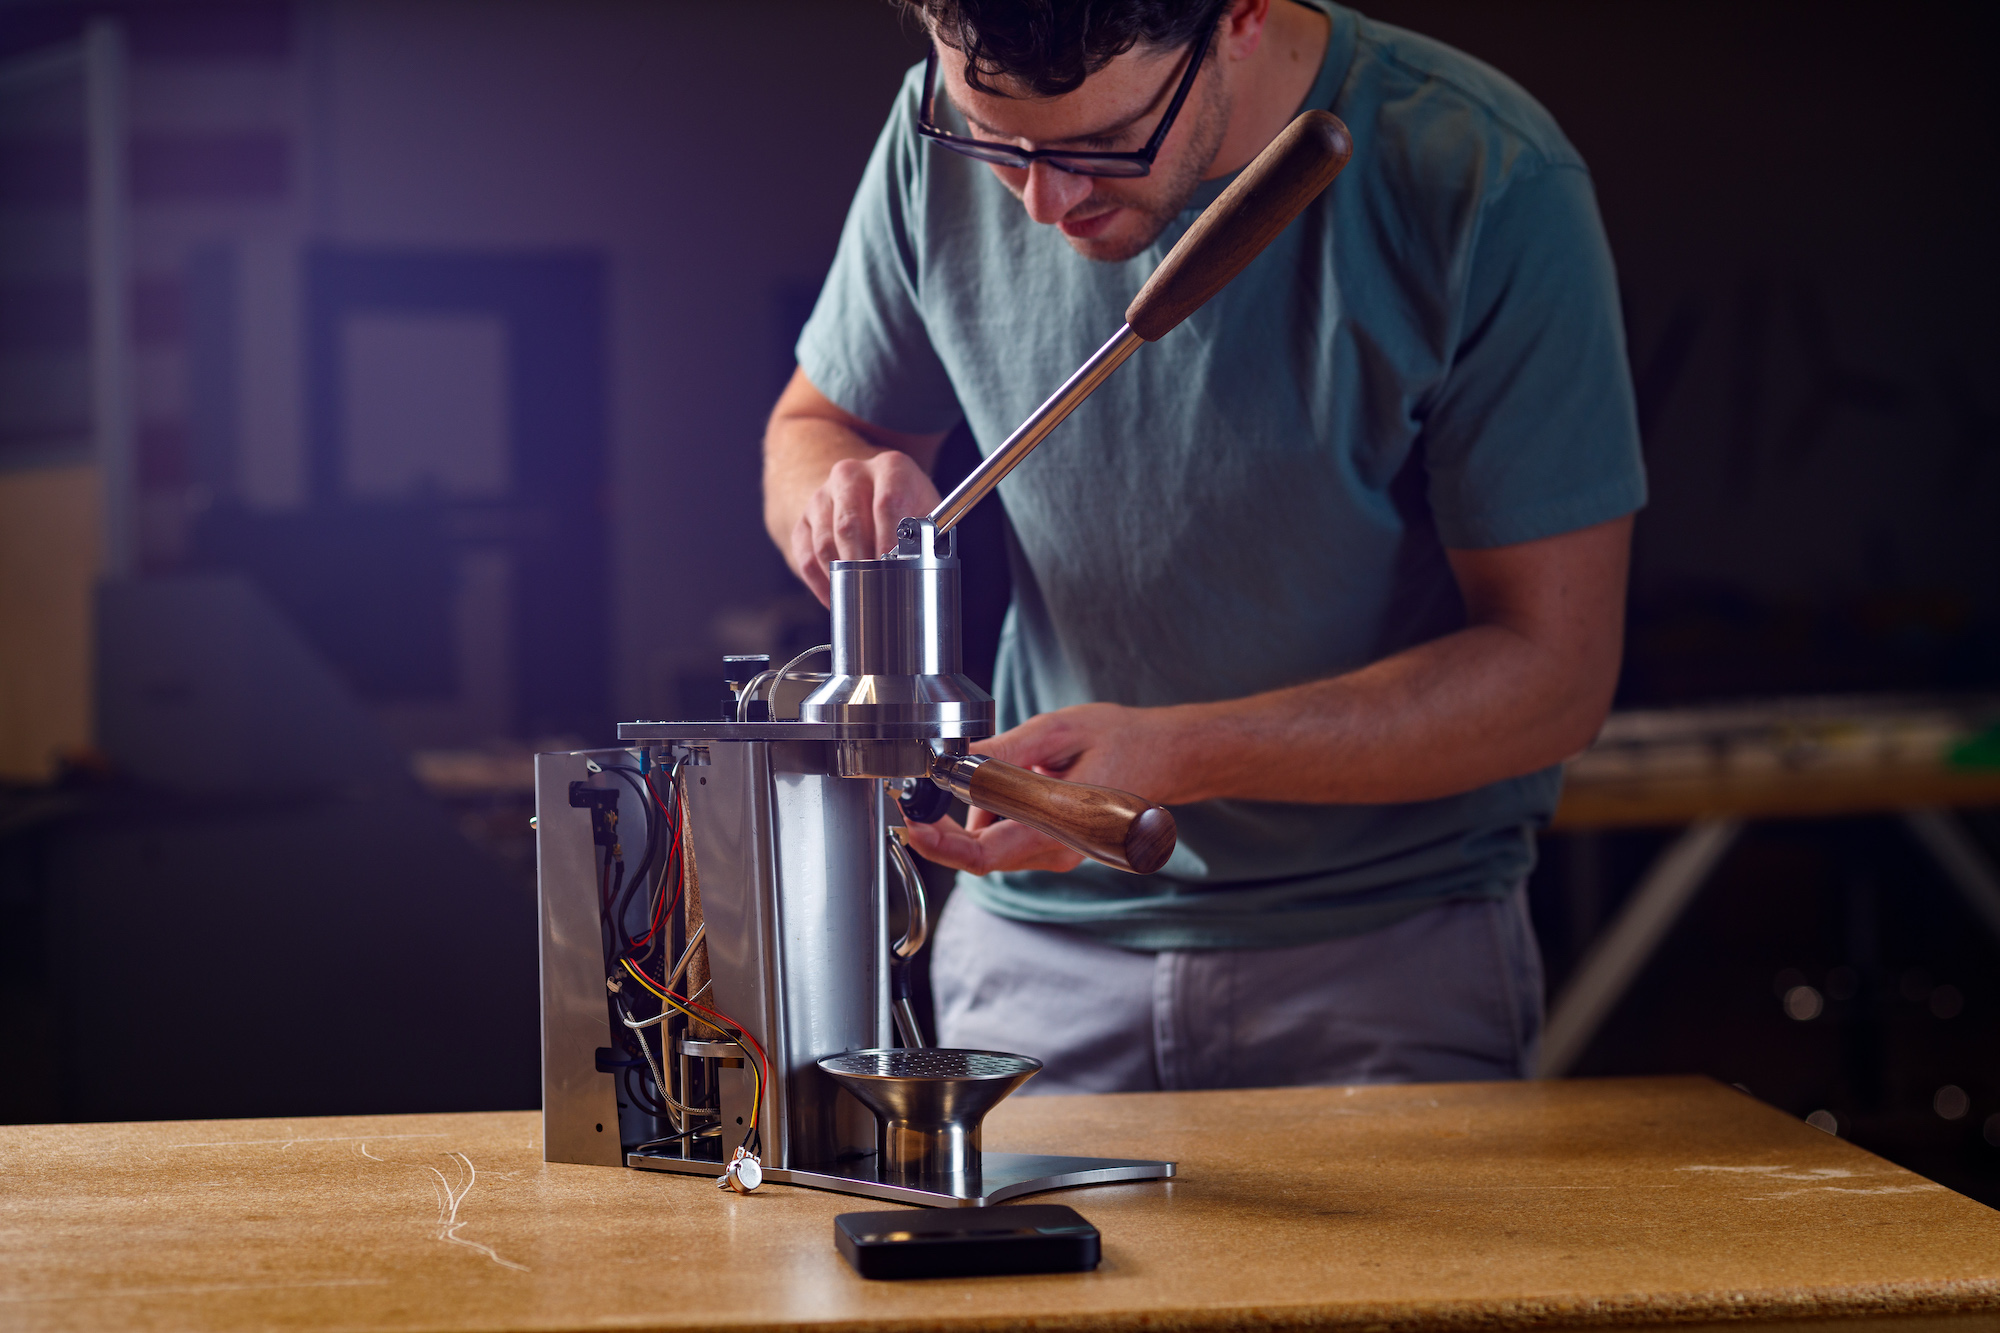 DIY, Handmade Lever-Espresso Machine. : r/DIY